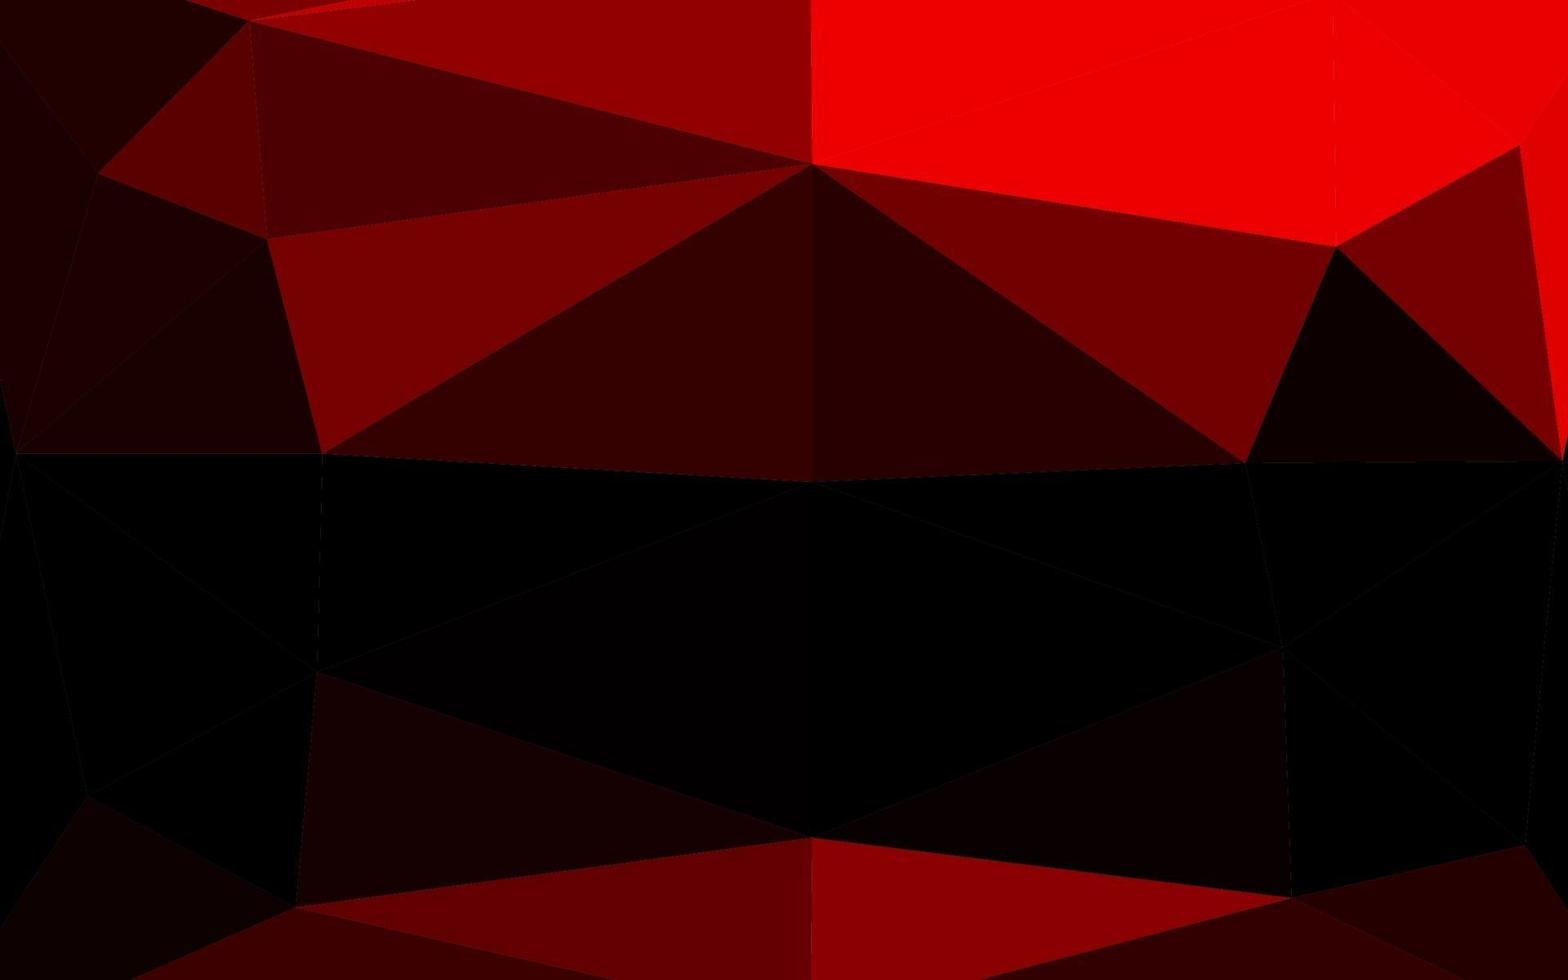 textura poligonal do sumário do vetor vermelho claro.